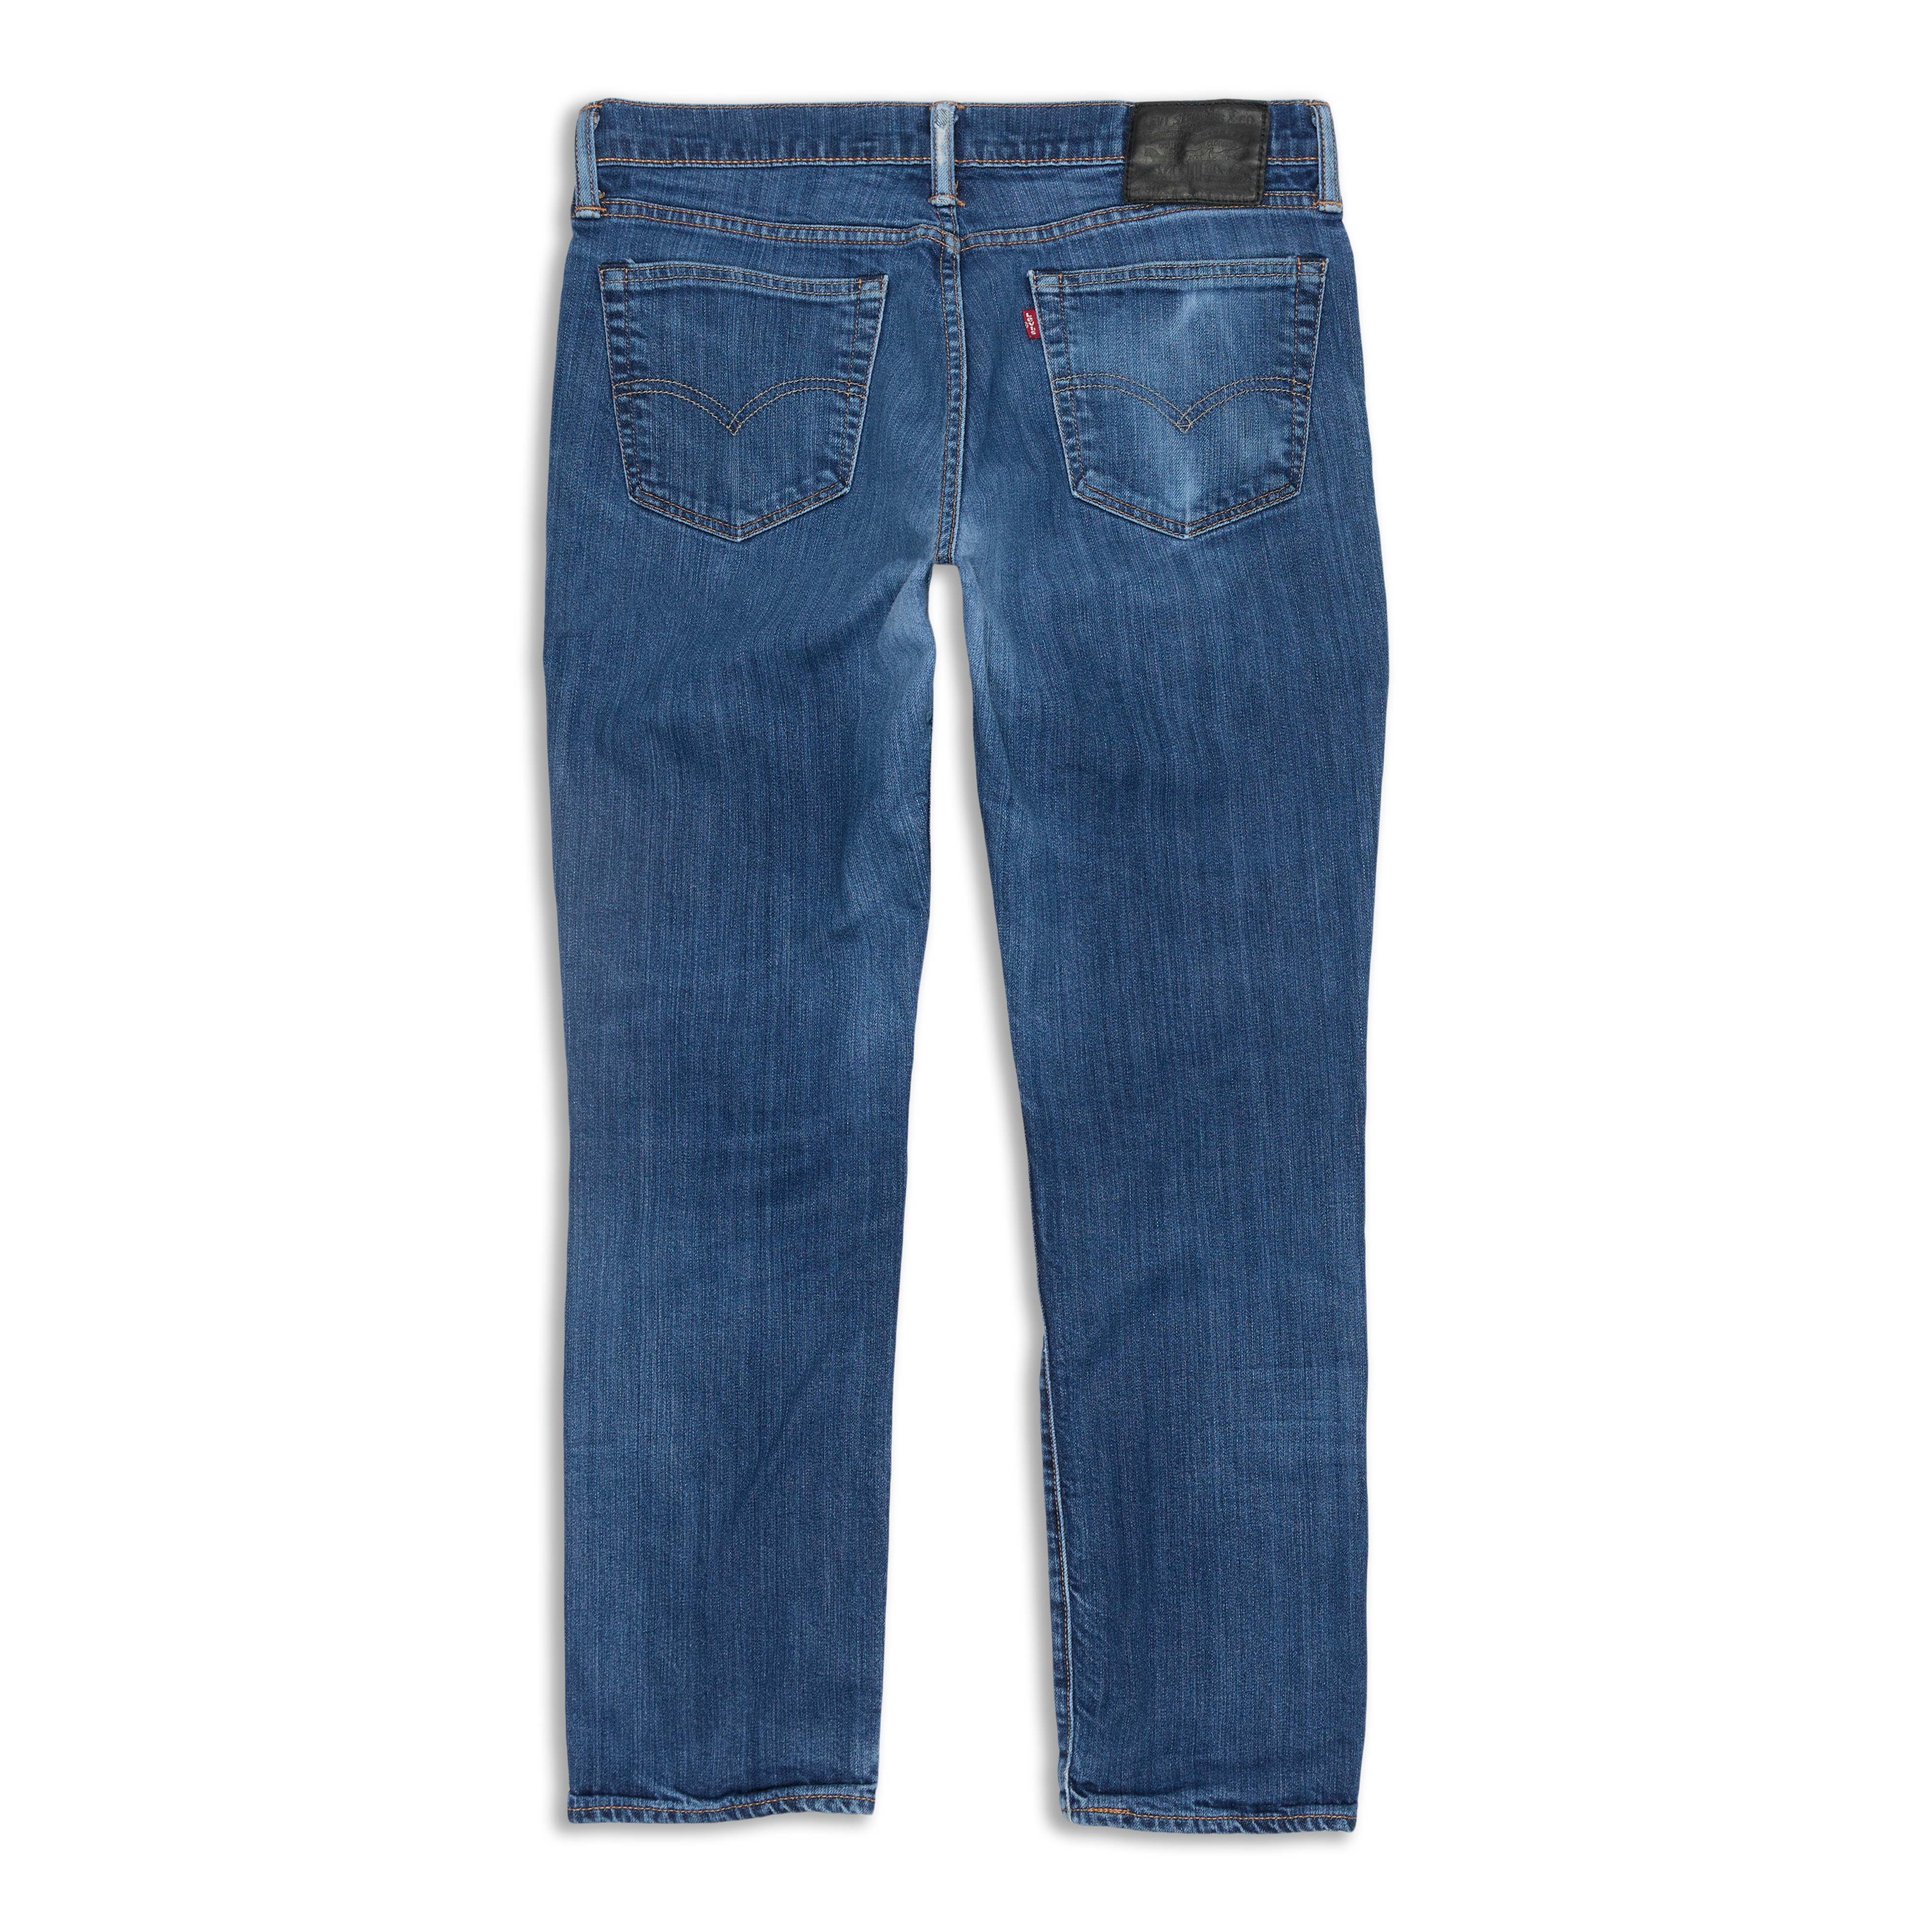 Levis 511™ Slim Fit Men's Jeans Blue Flame